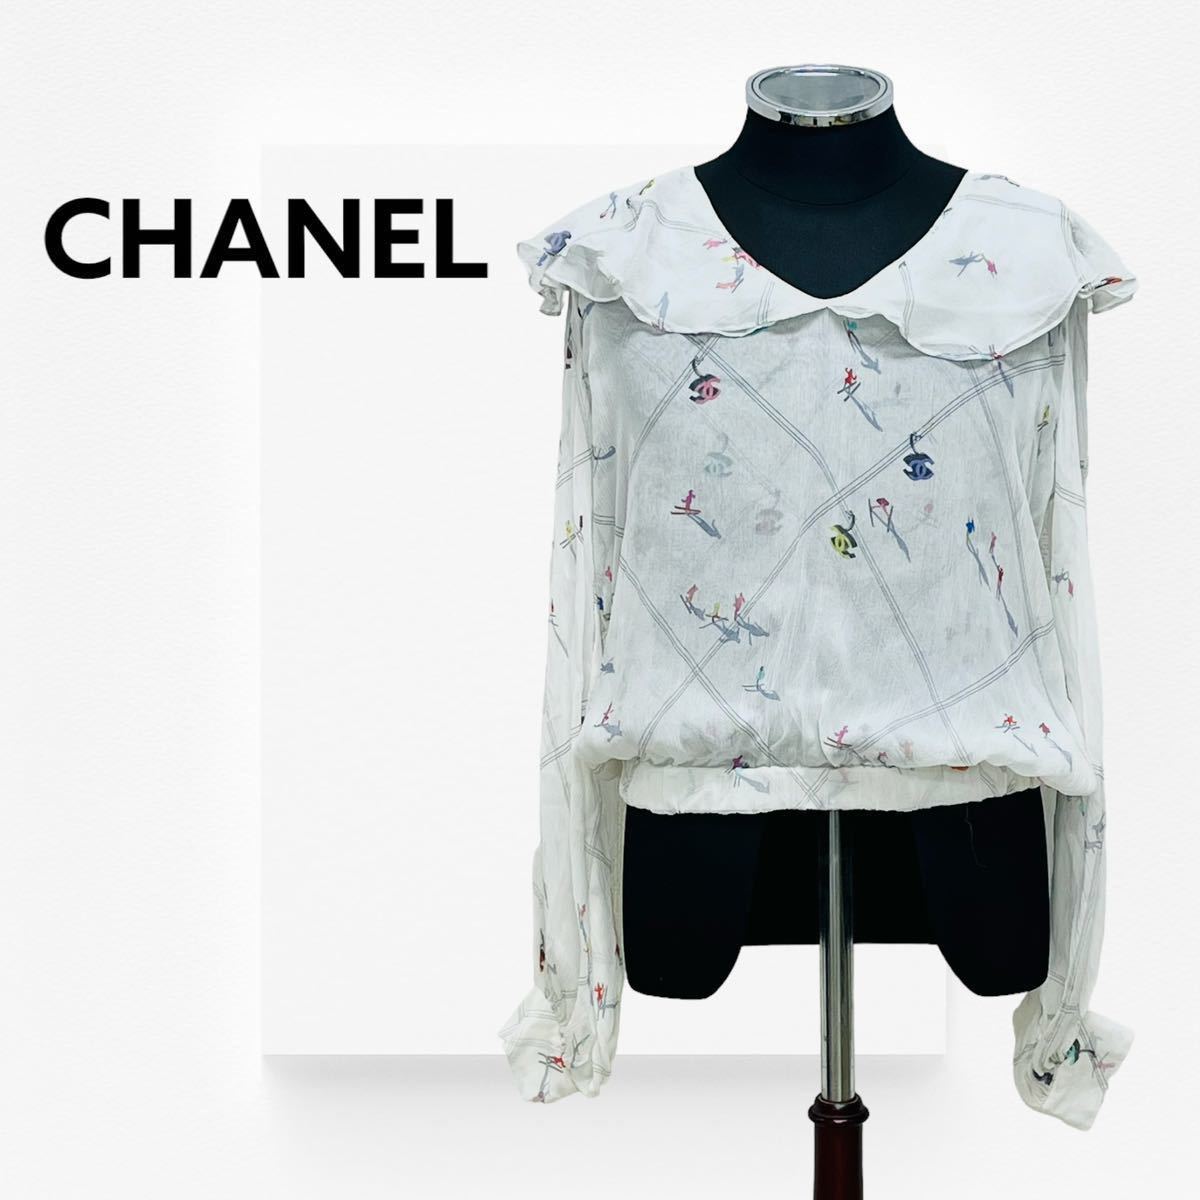 CHANEL シルク100% シャネル スカート Lサイズ ホワイト ココボタン